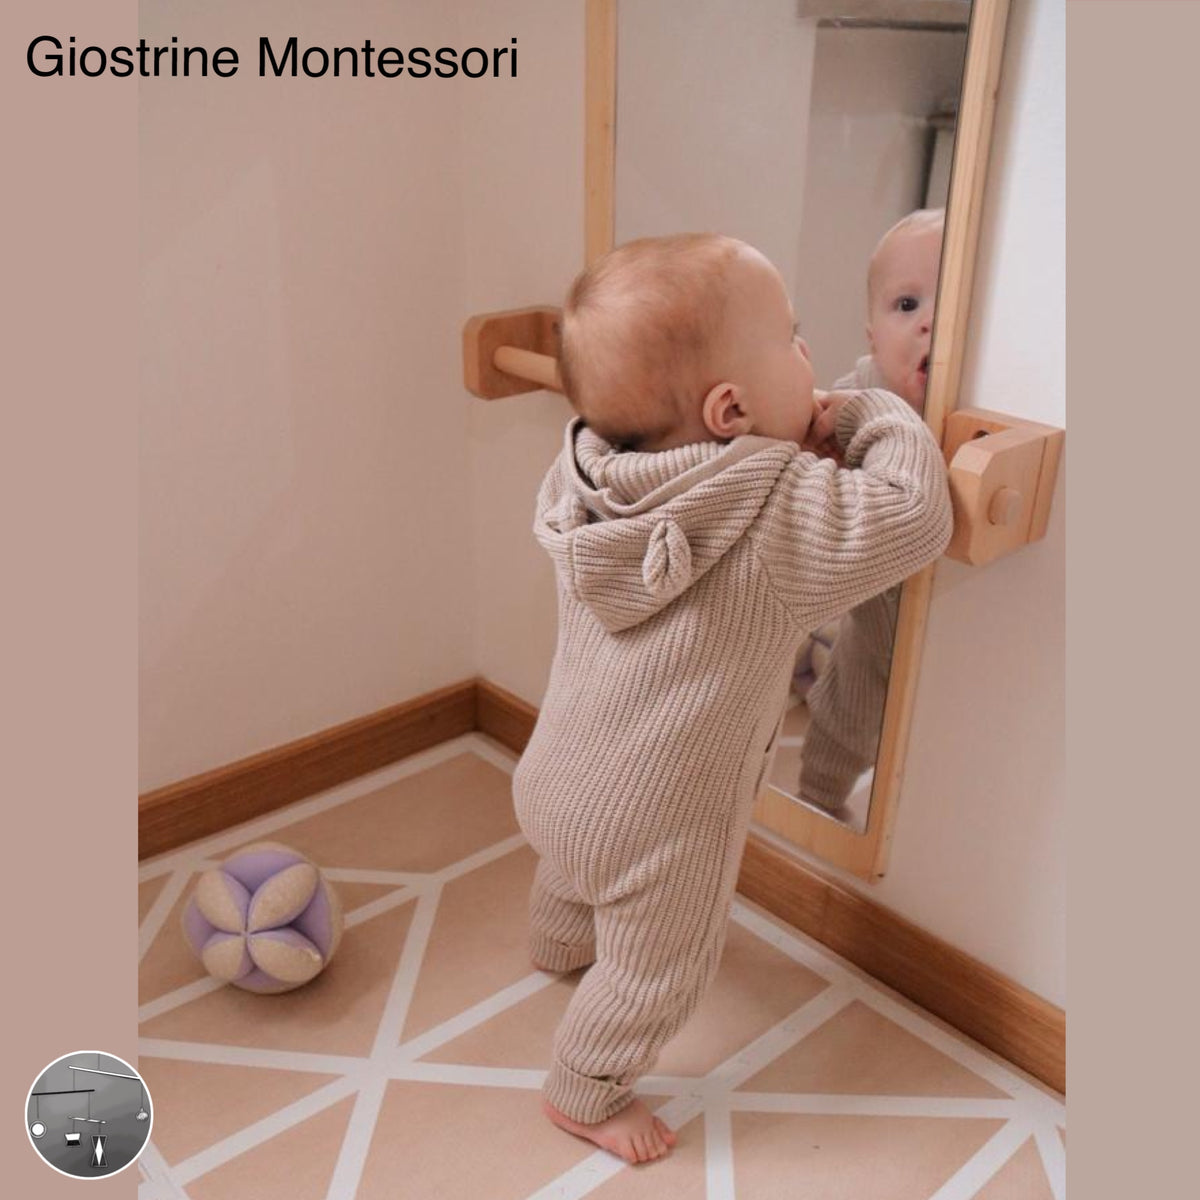 Specchio Montessori a parete – Giostrine Montessori